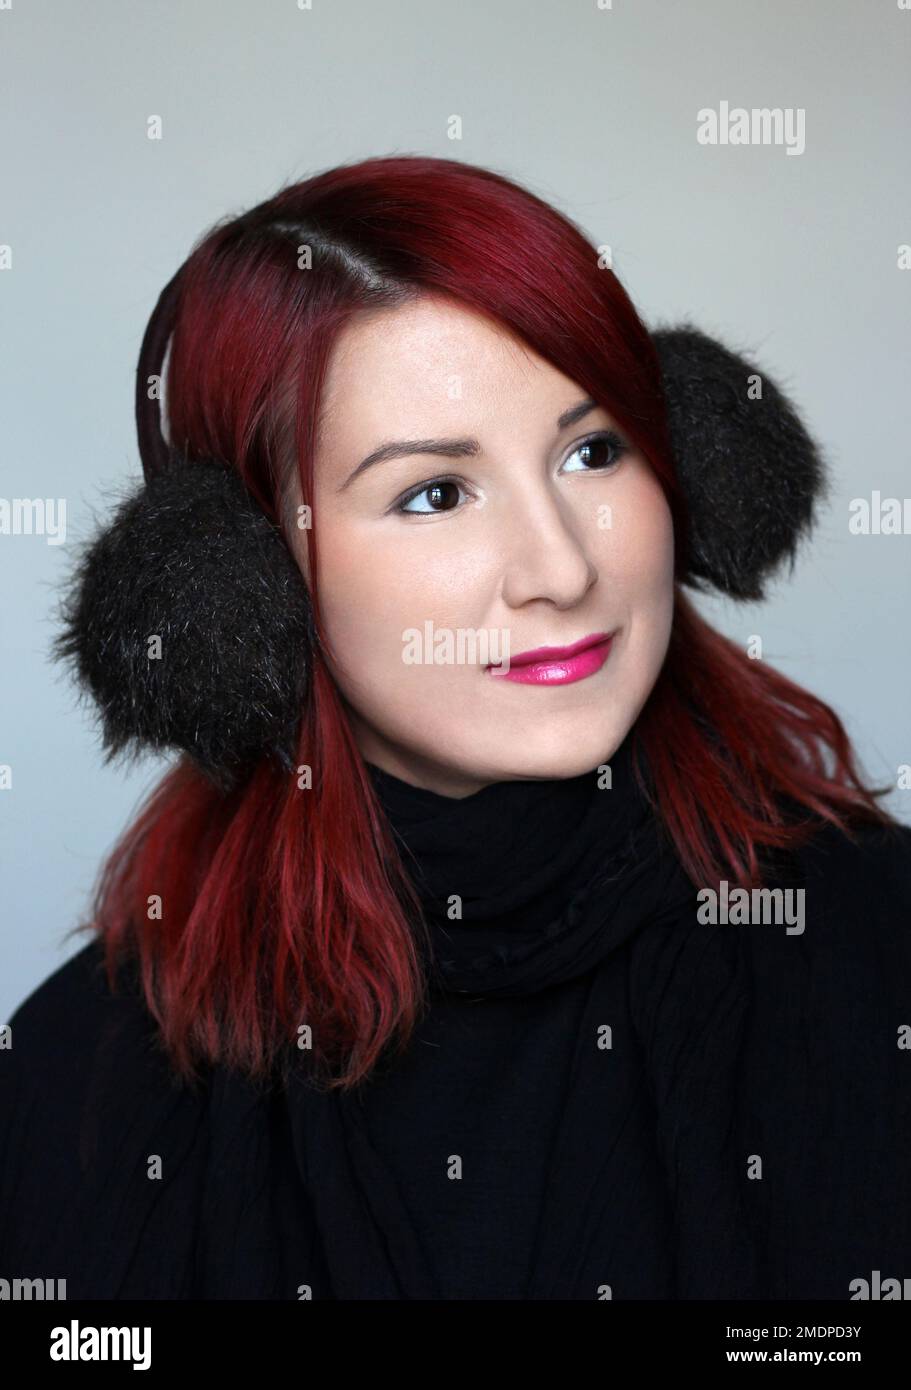 Lächelndes rothaariges Mädchen in den Pelz-Ohrenschützern und dem schwarzen Schal Stockfoto